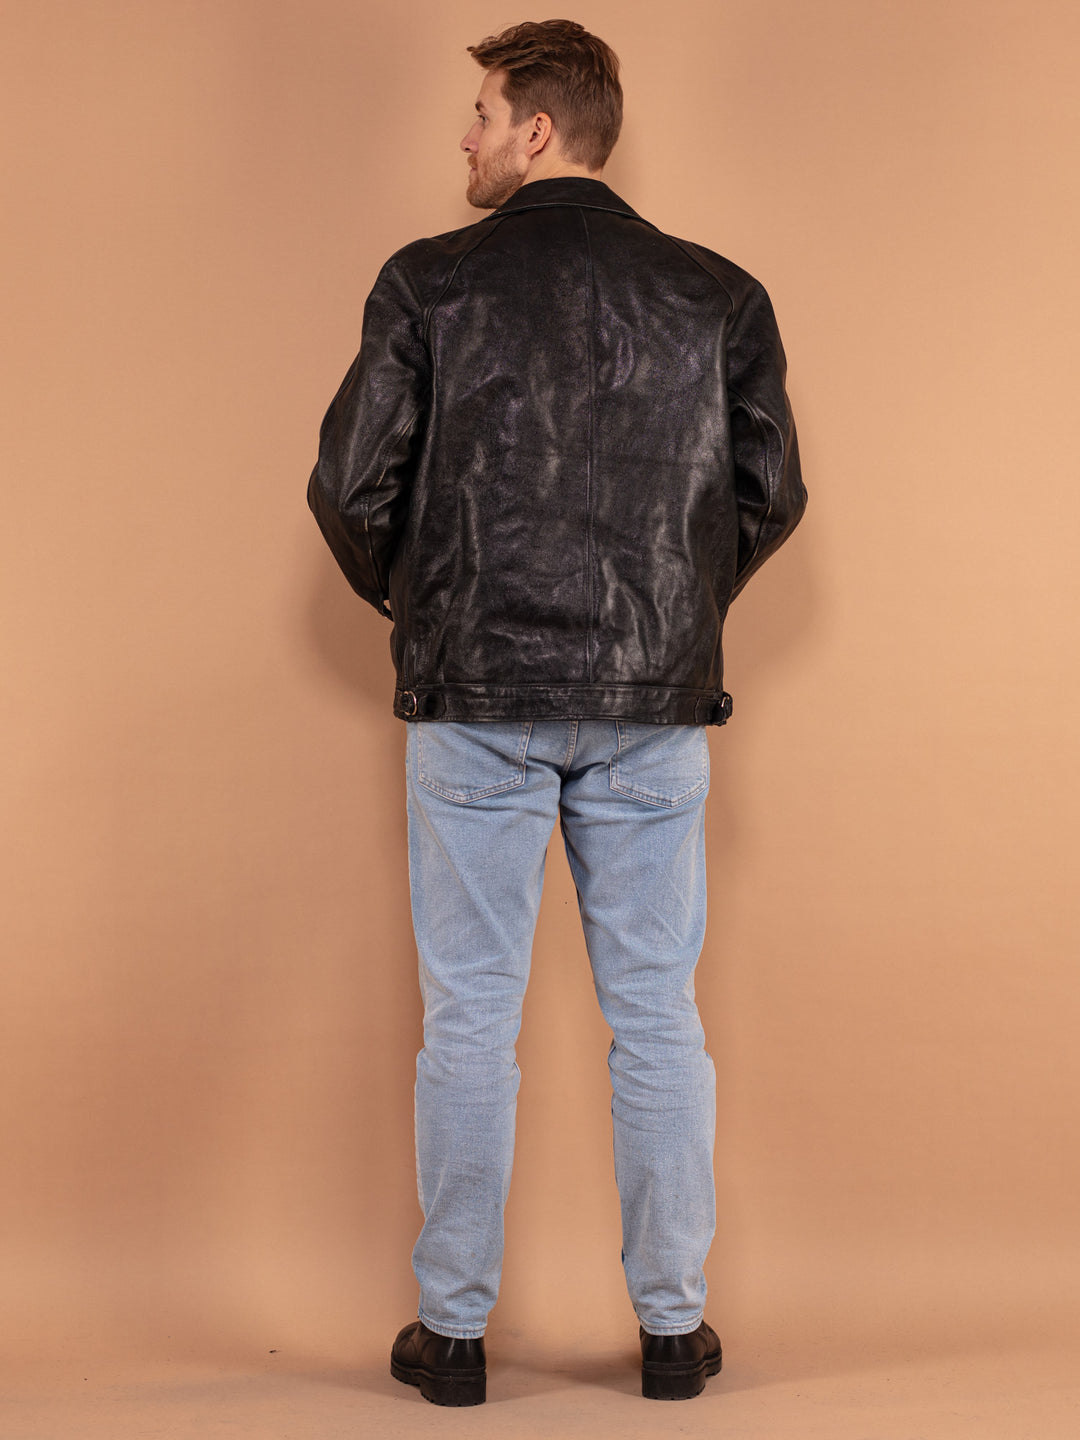 80s Biker Leather Sheepskin Jacket, Size XXL, Men Vintage Wool Insulated Moto Jacket, Route 66 Motorcycle Jacket, Rocker Style Outerwear